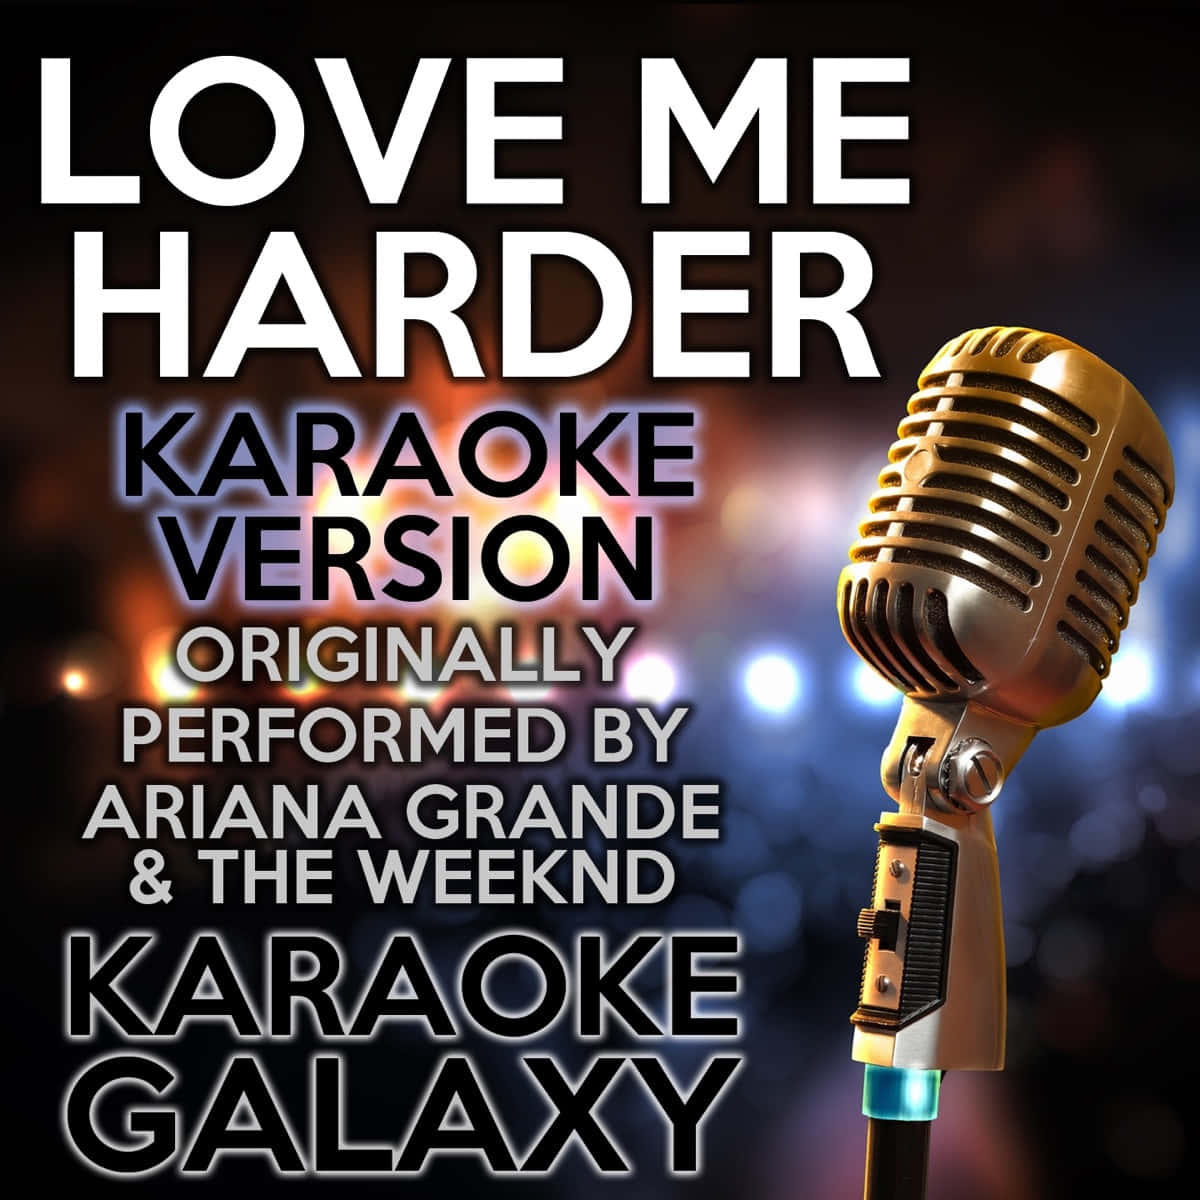 Love Me Harder Karaoke Version Background